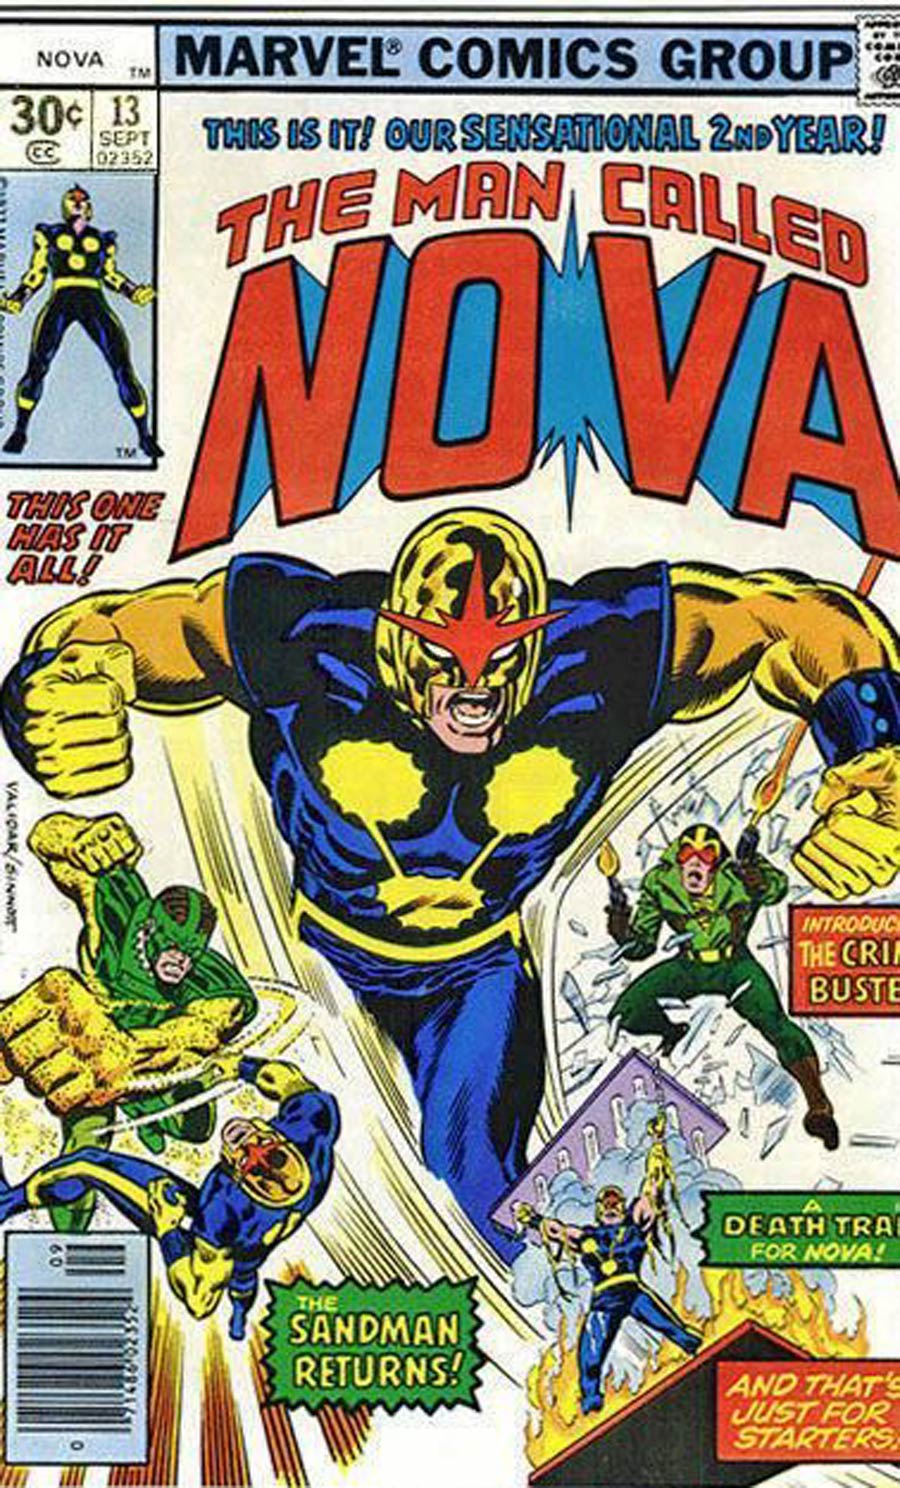 Nova #13 Cover A 30-Cent Regular Edition